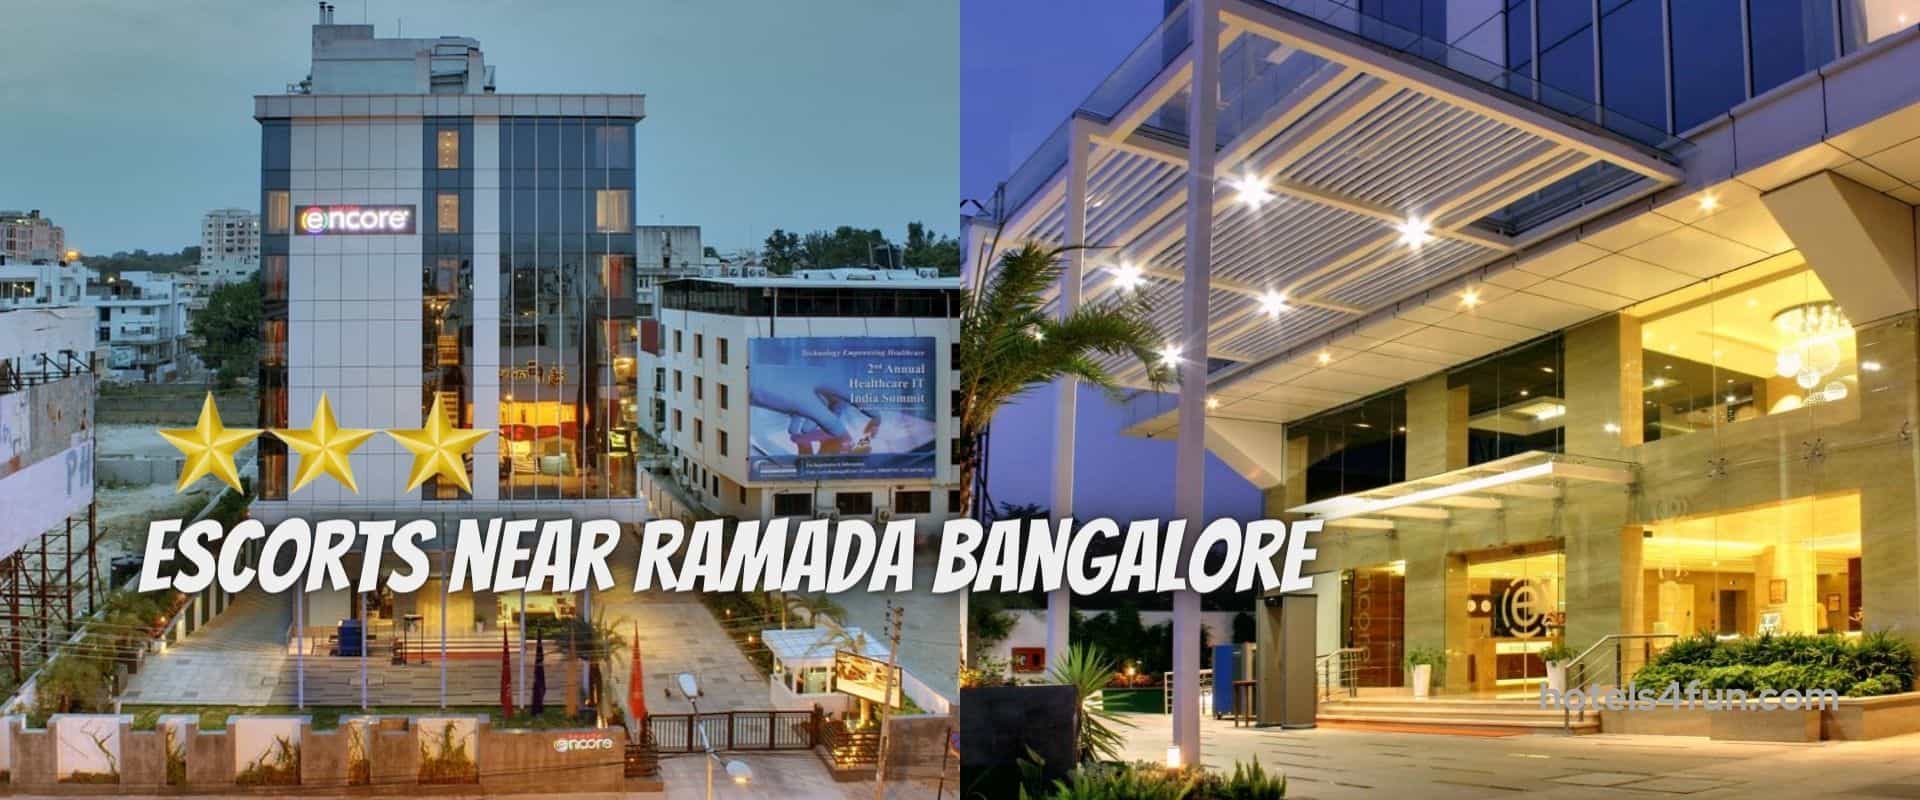 Ramada Hotel Bangalore